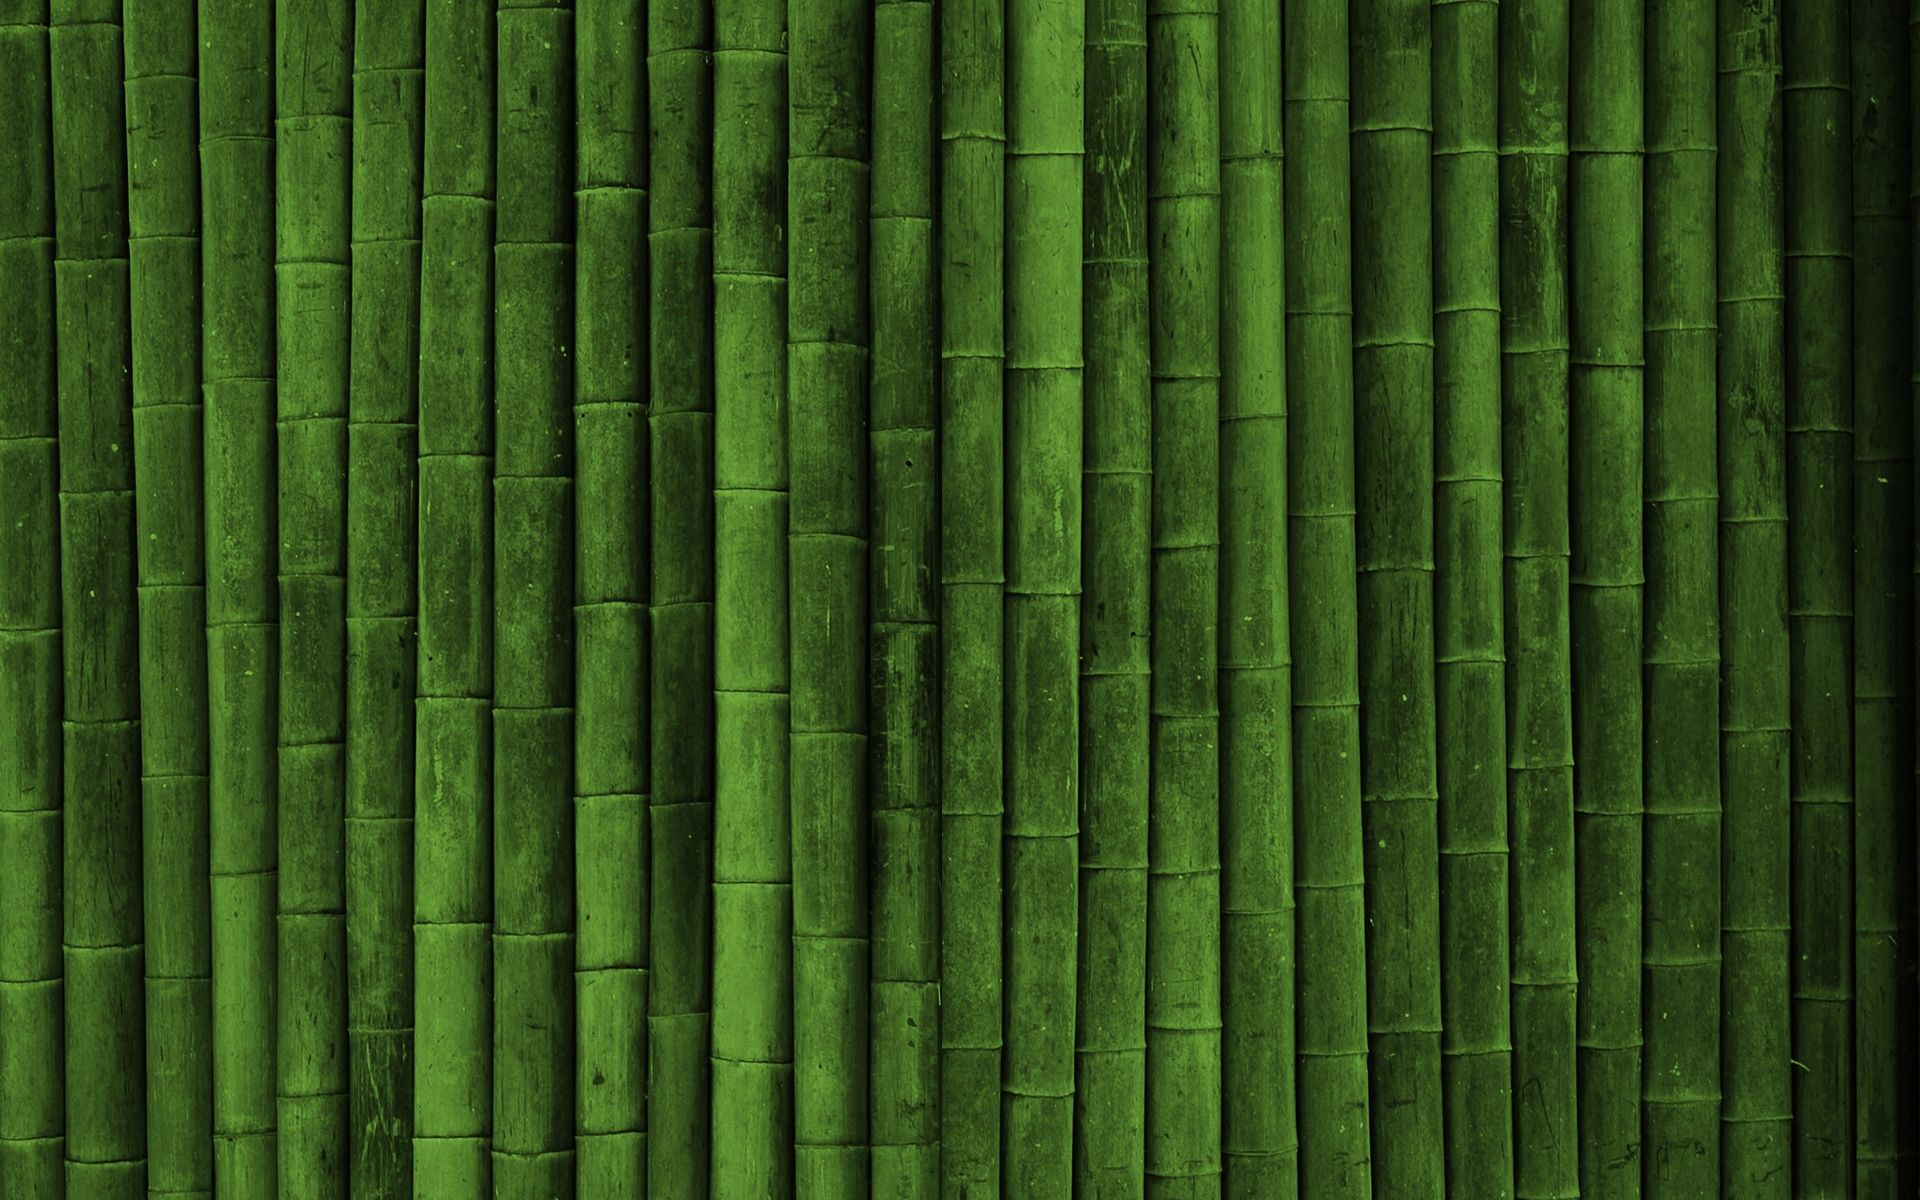 Fondos de pantalla de bambú - FondosMil